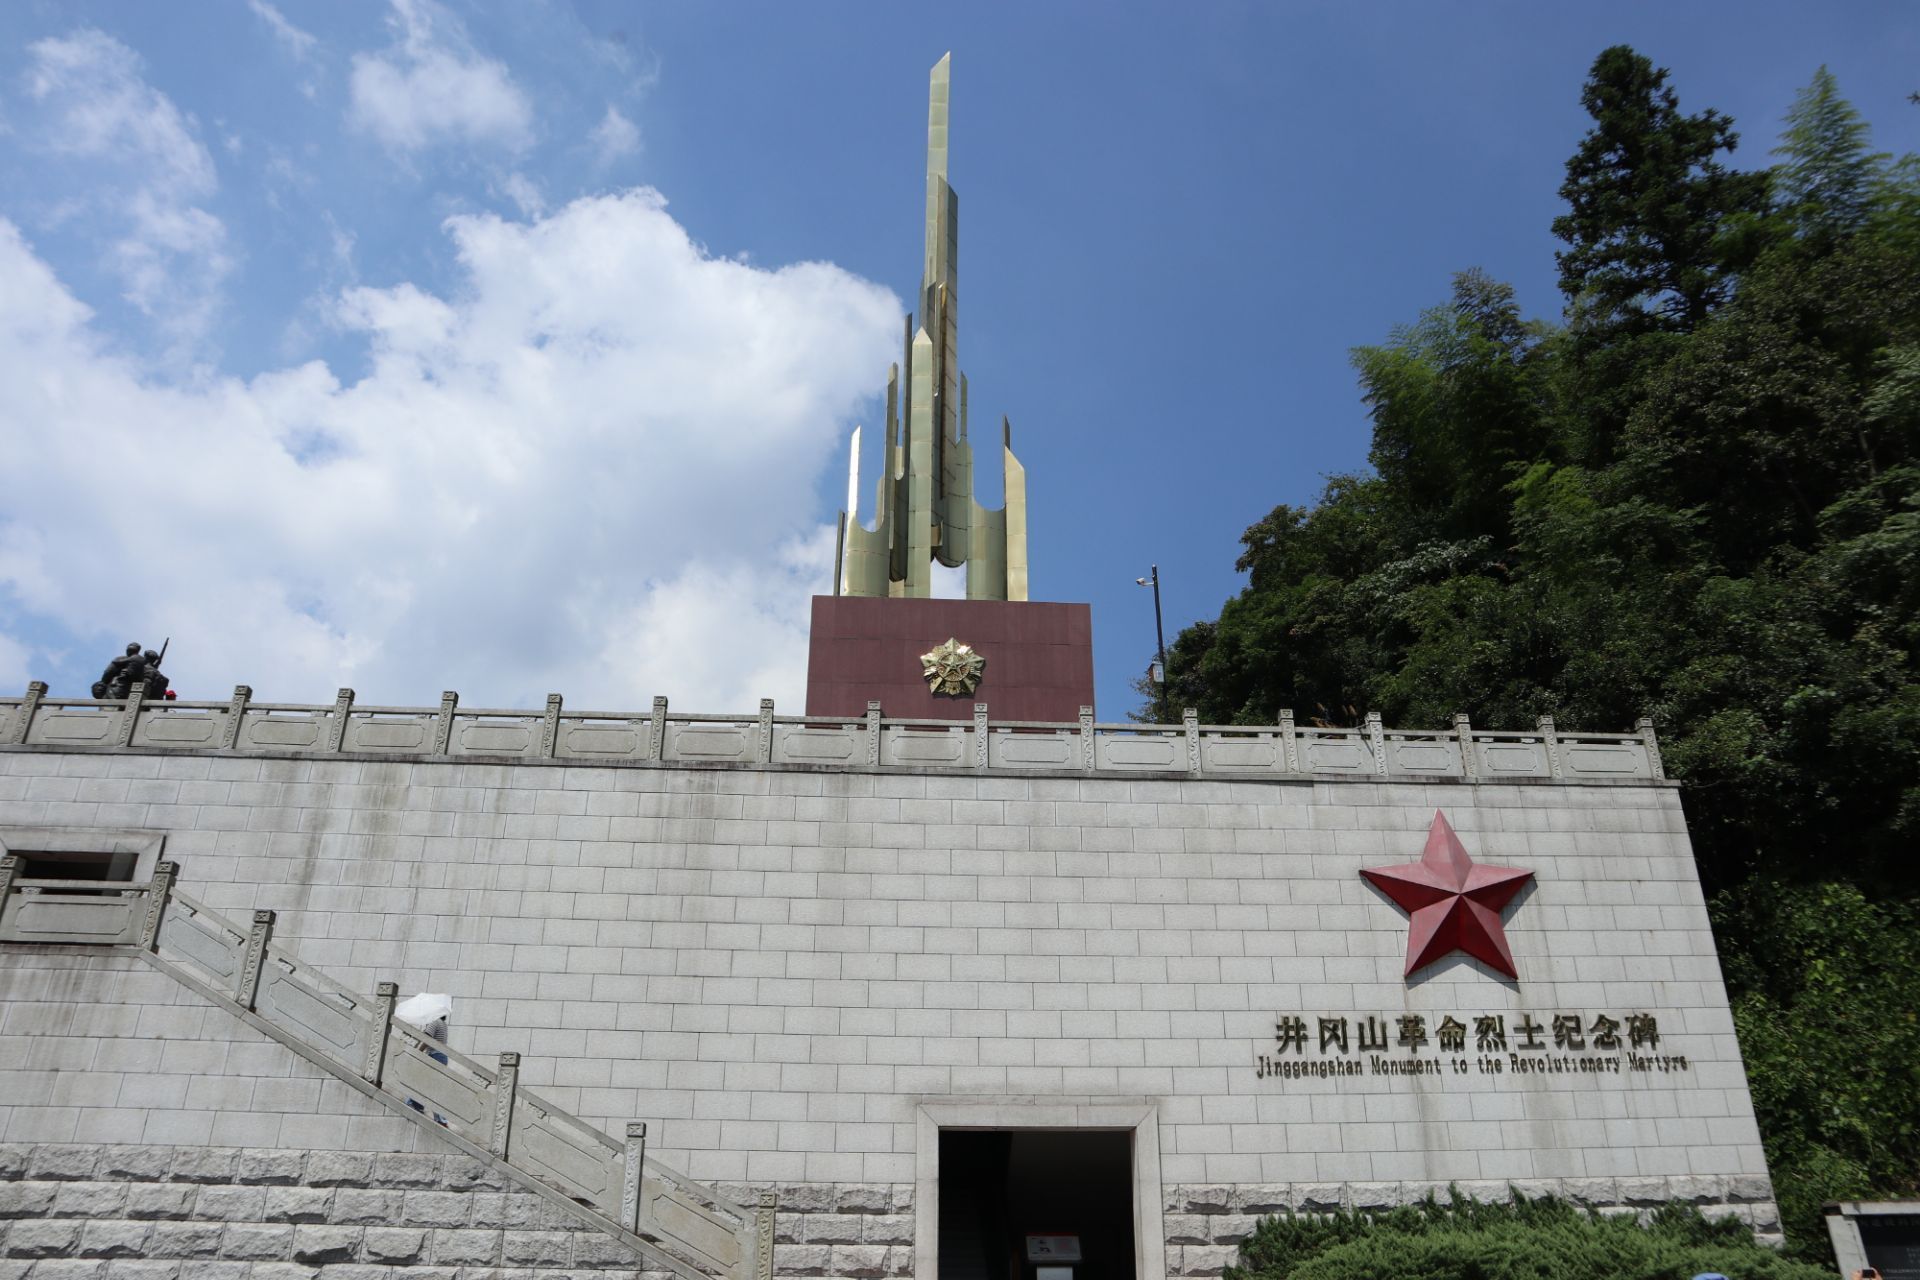 雕塑园,纪念碑,碑林4个部分,纪念馆里陈列了参加井冈山革命斗争的一些